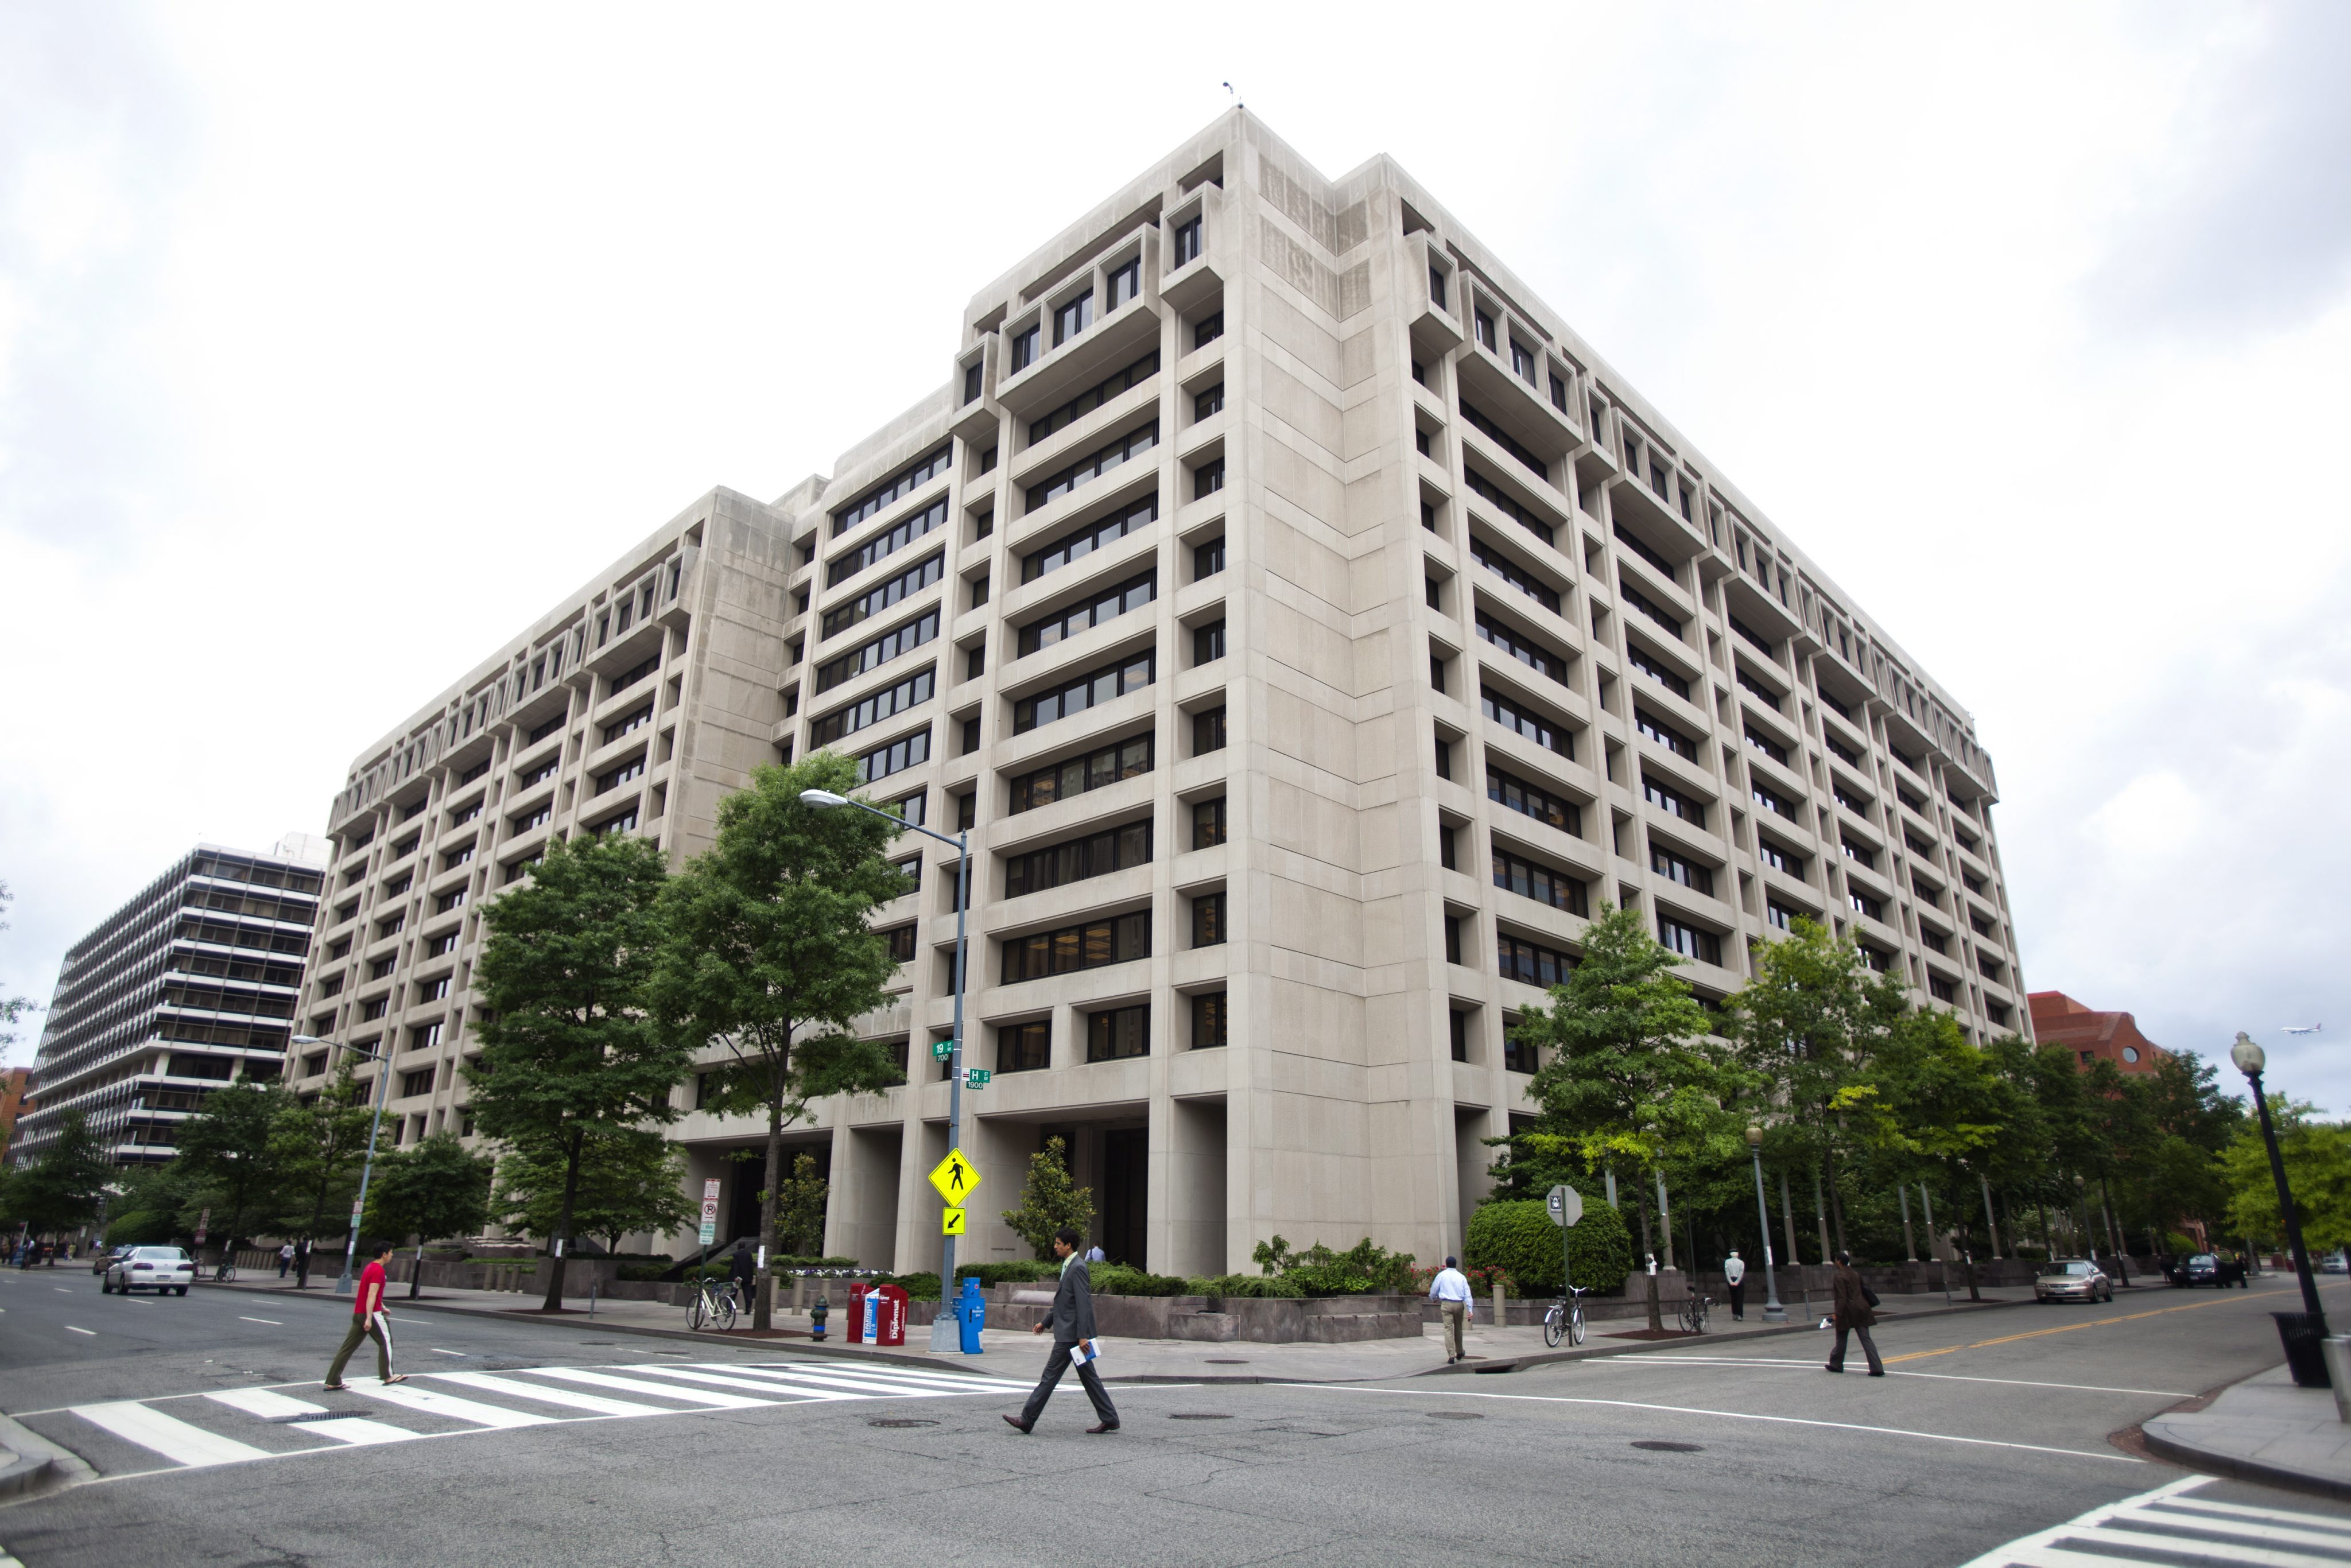 Сайт мвф. МВФ Вашингтон. Штаб квартира МВФ В Вашингтоне. Международный валютный фонд (МВФ). Международный валютный фонд здание Вашингтон.